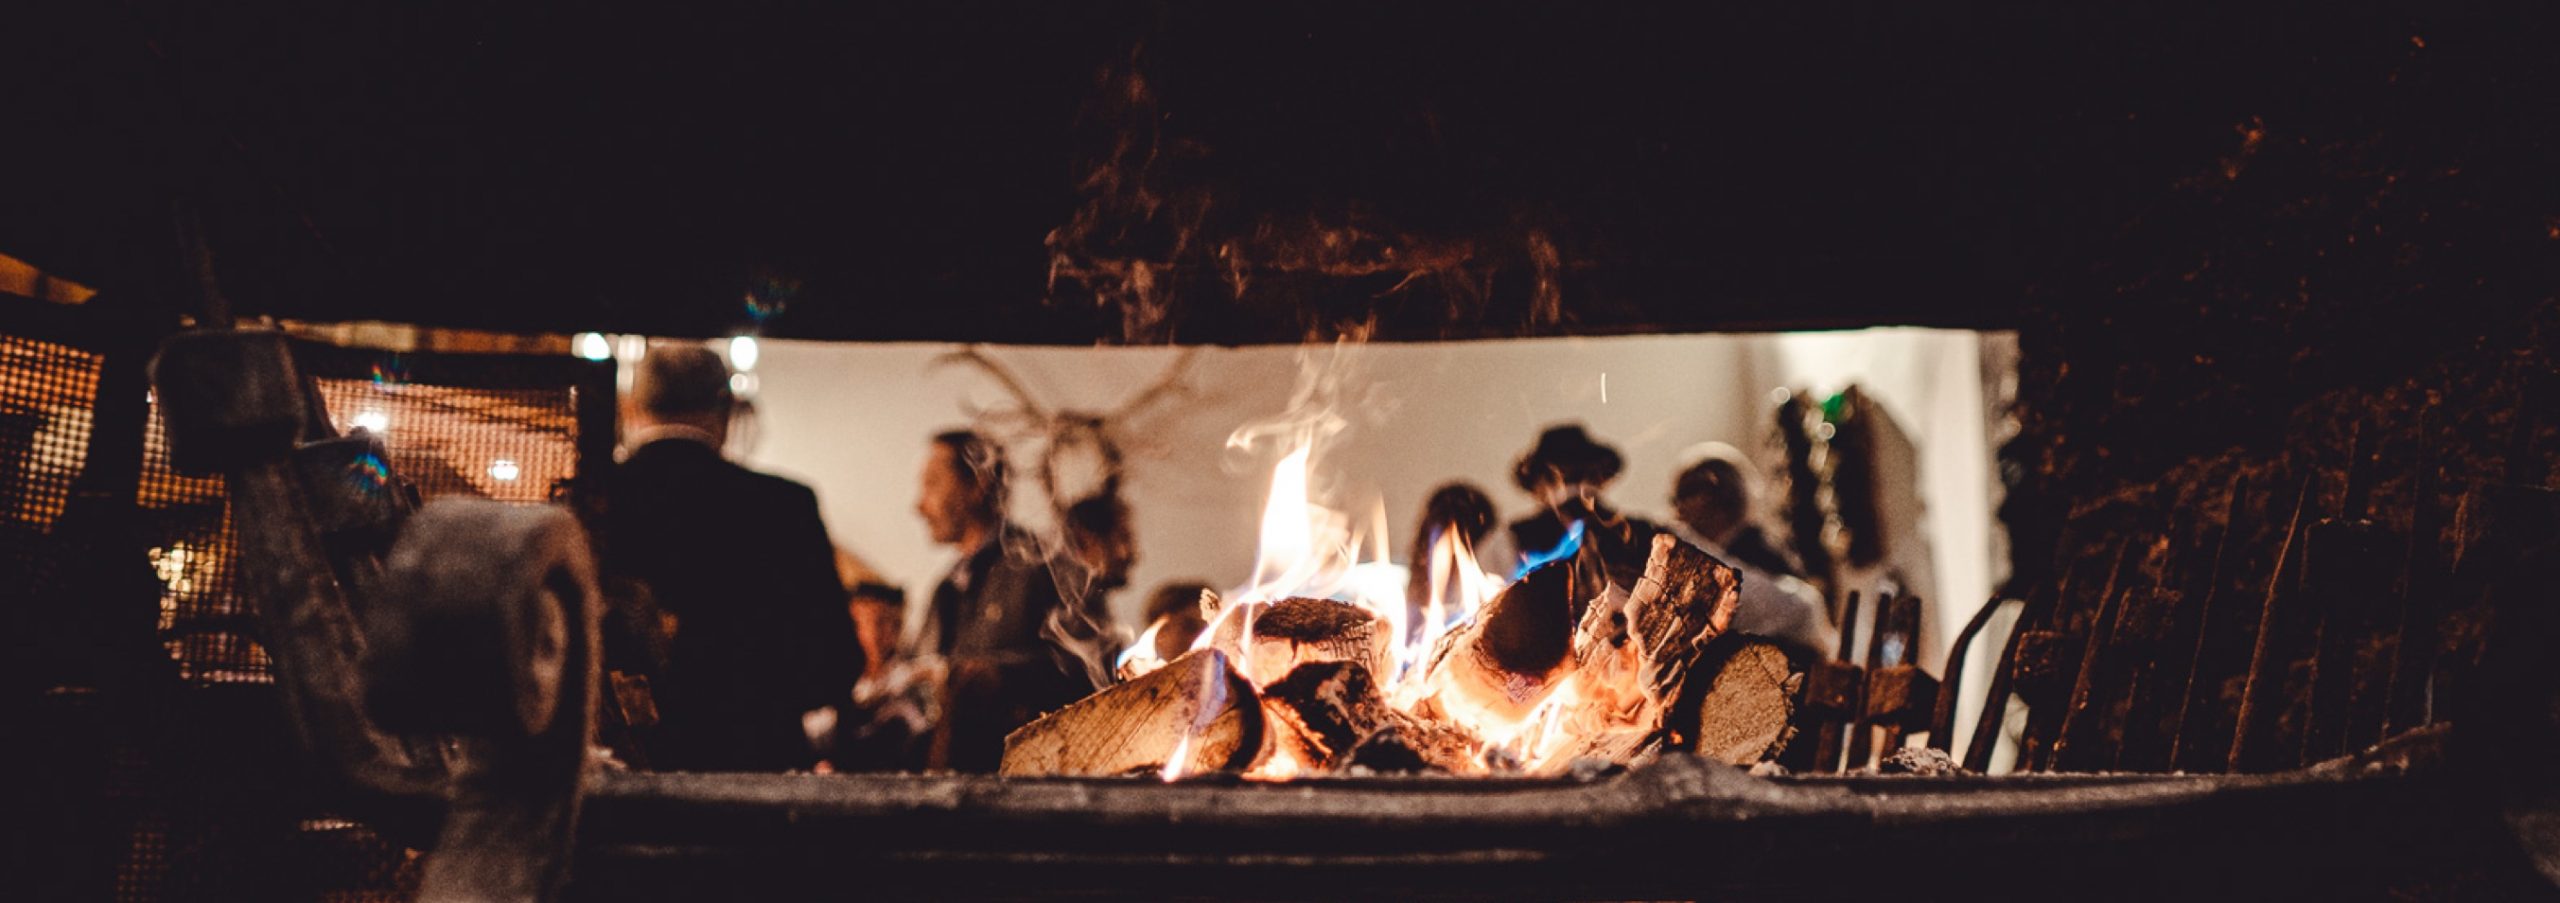 Lagerfeuer in der Nacht bei einer Veranstaltung im Freien